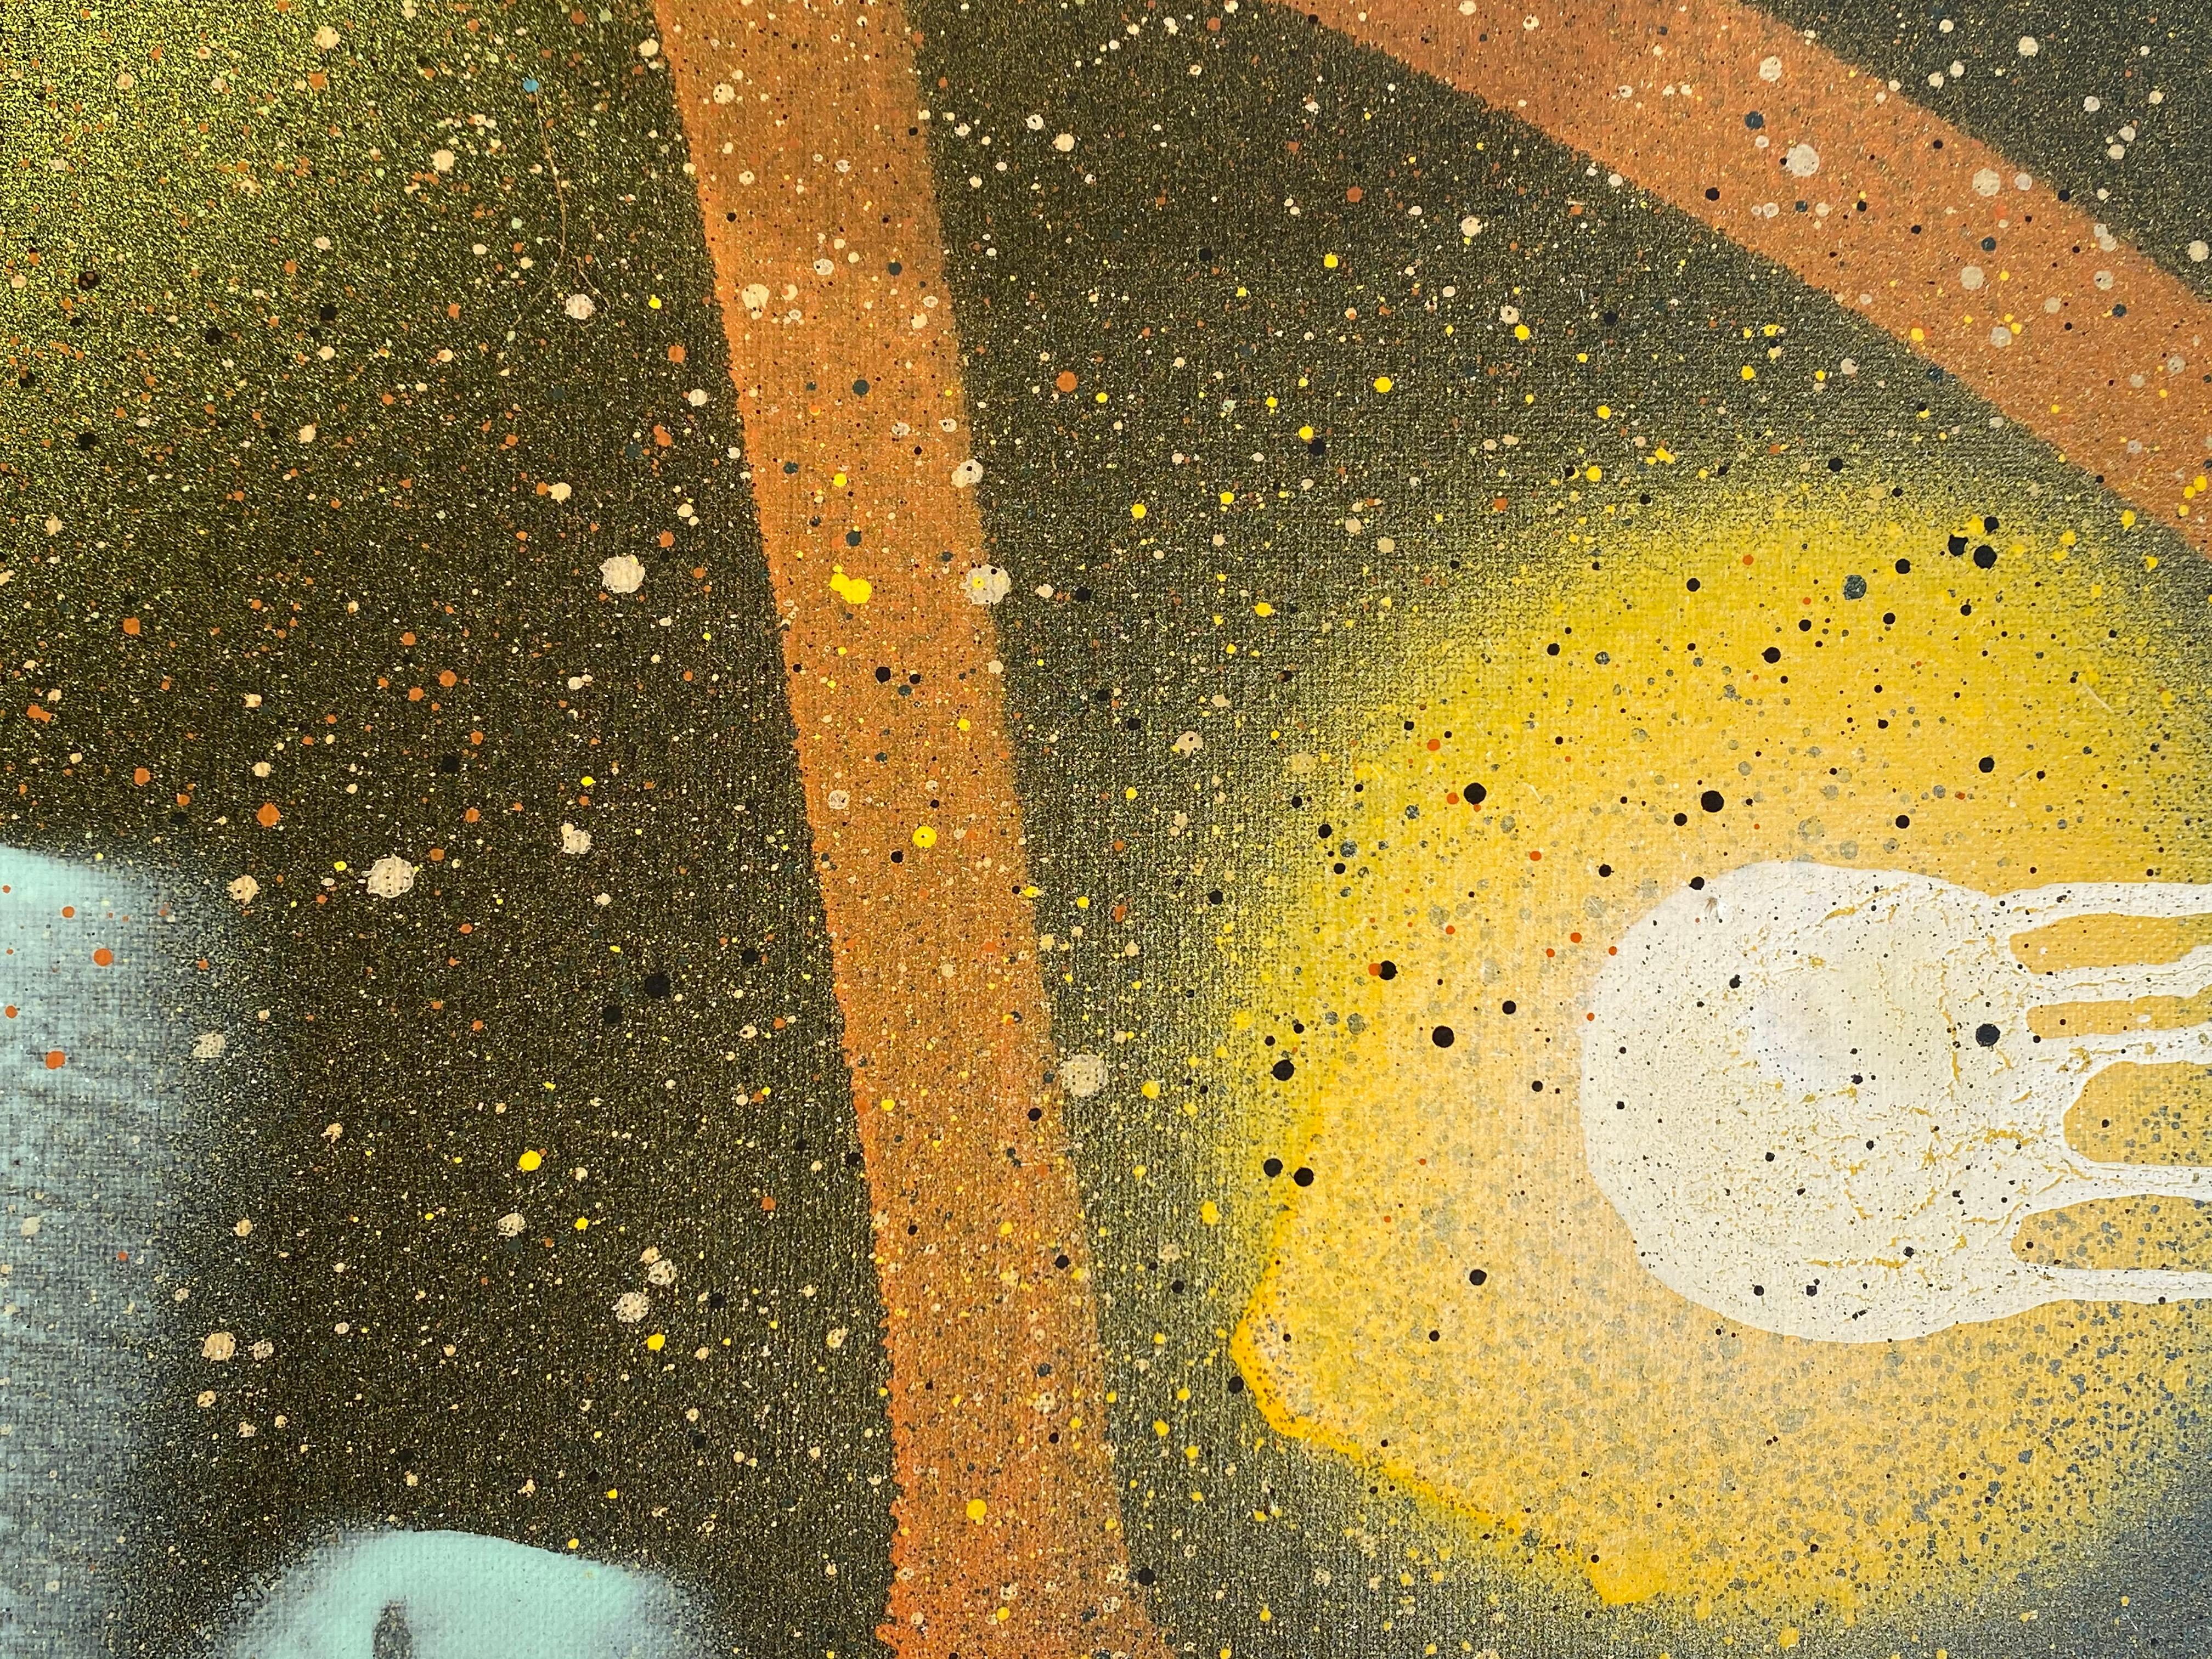 Orange, vert, jaune, turquoise, noir - techniques mixtes sur toile de Jonathan Georgi. Plusieurs pièces de cette série ont été accrochées ensemble  ou en tant qu'œuvre d'art unique, c'est une déclaration très puissante.
Attiré par les arts dès son